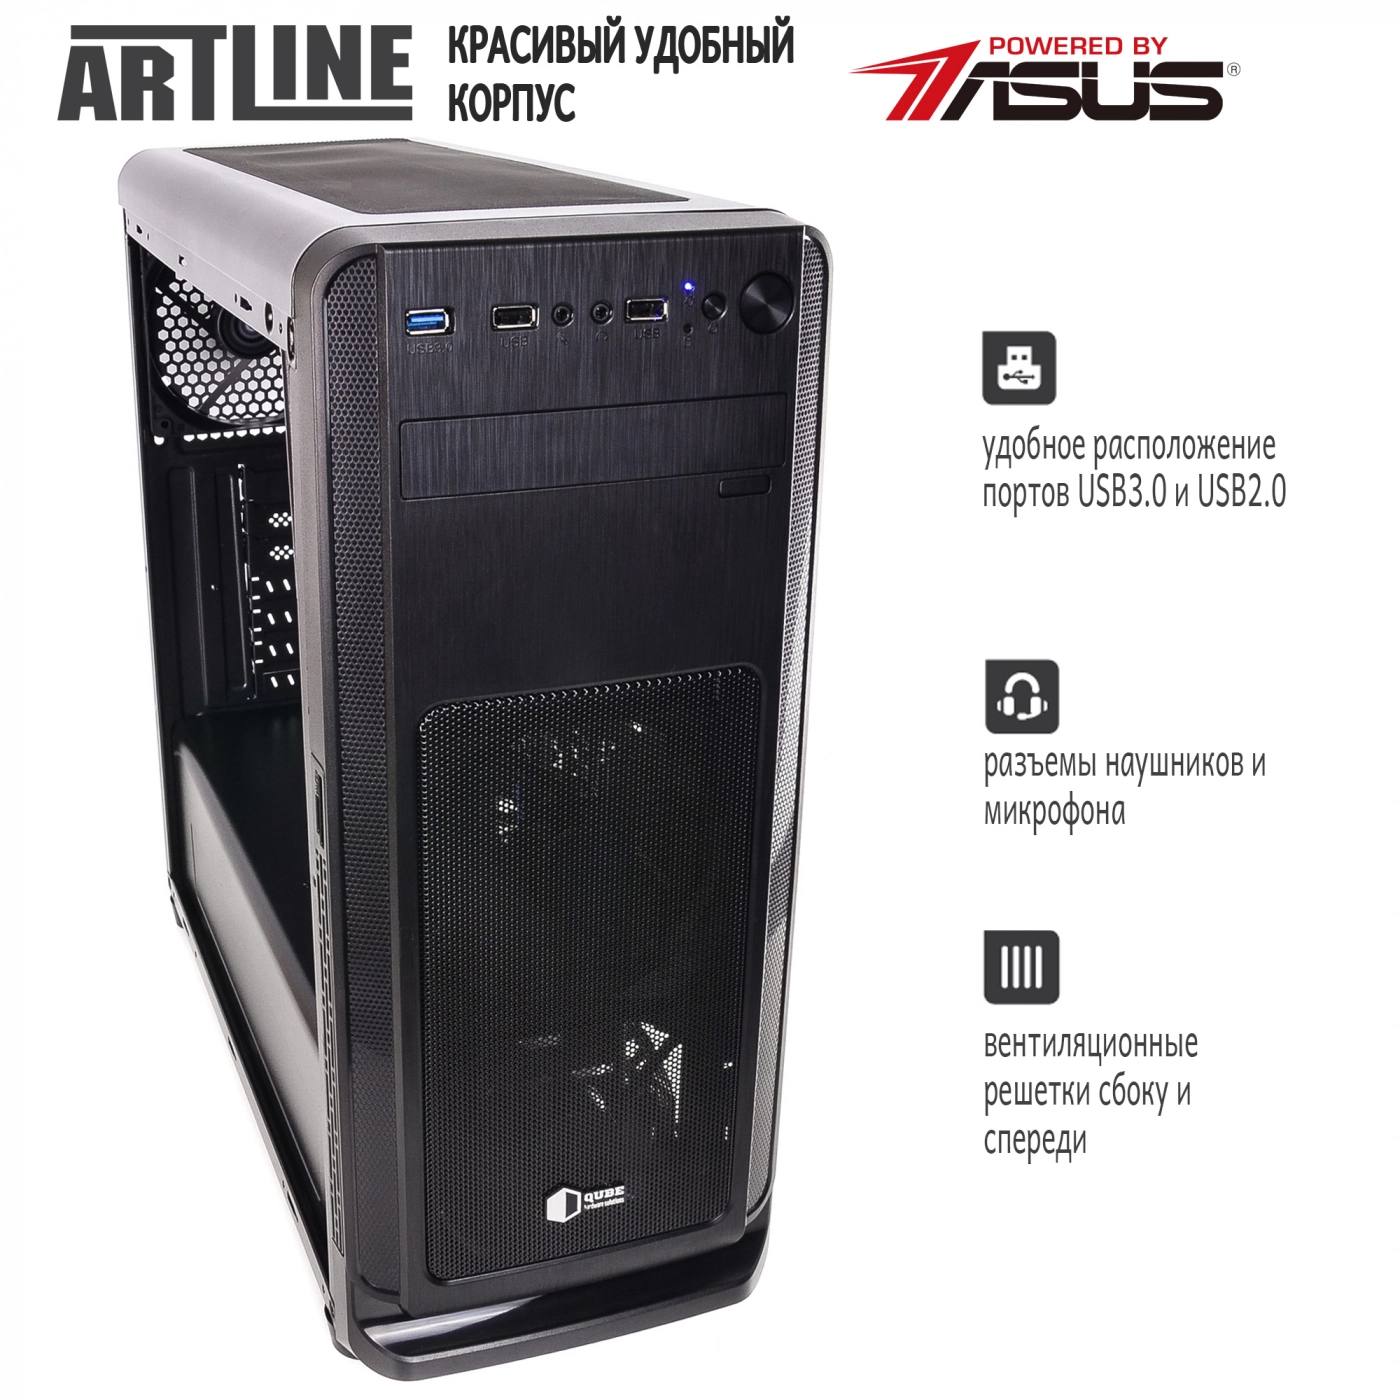 Купить Сервер ARTLINE Business T63v01 - фото 4